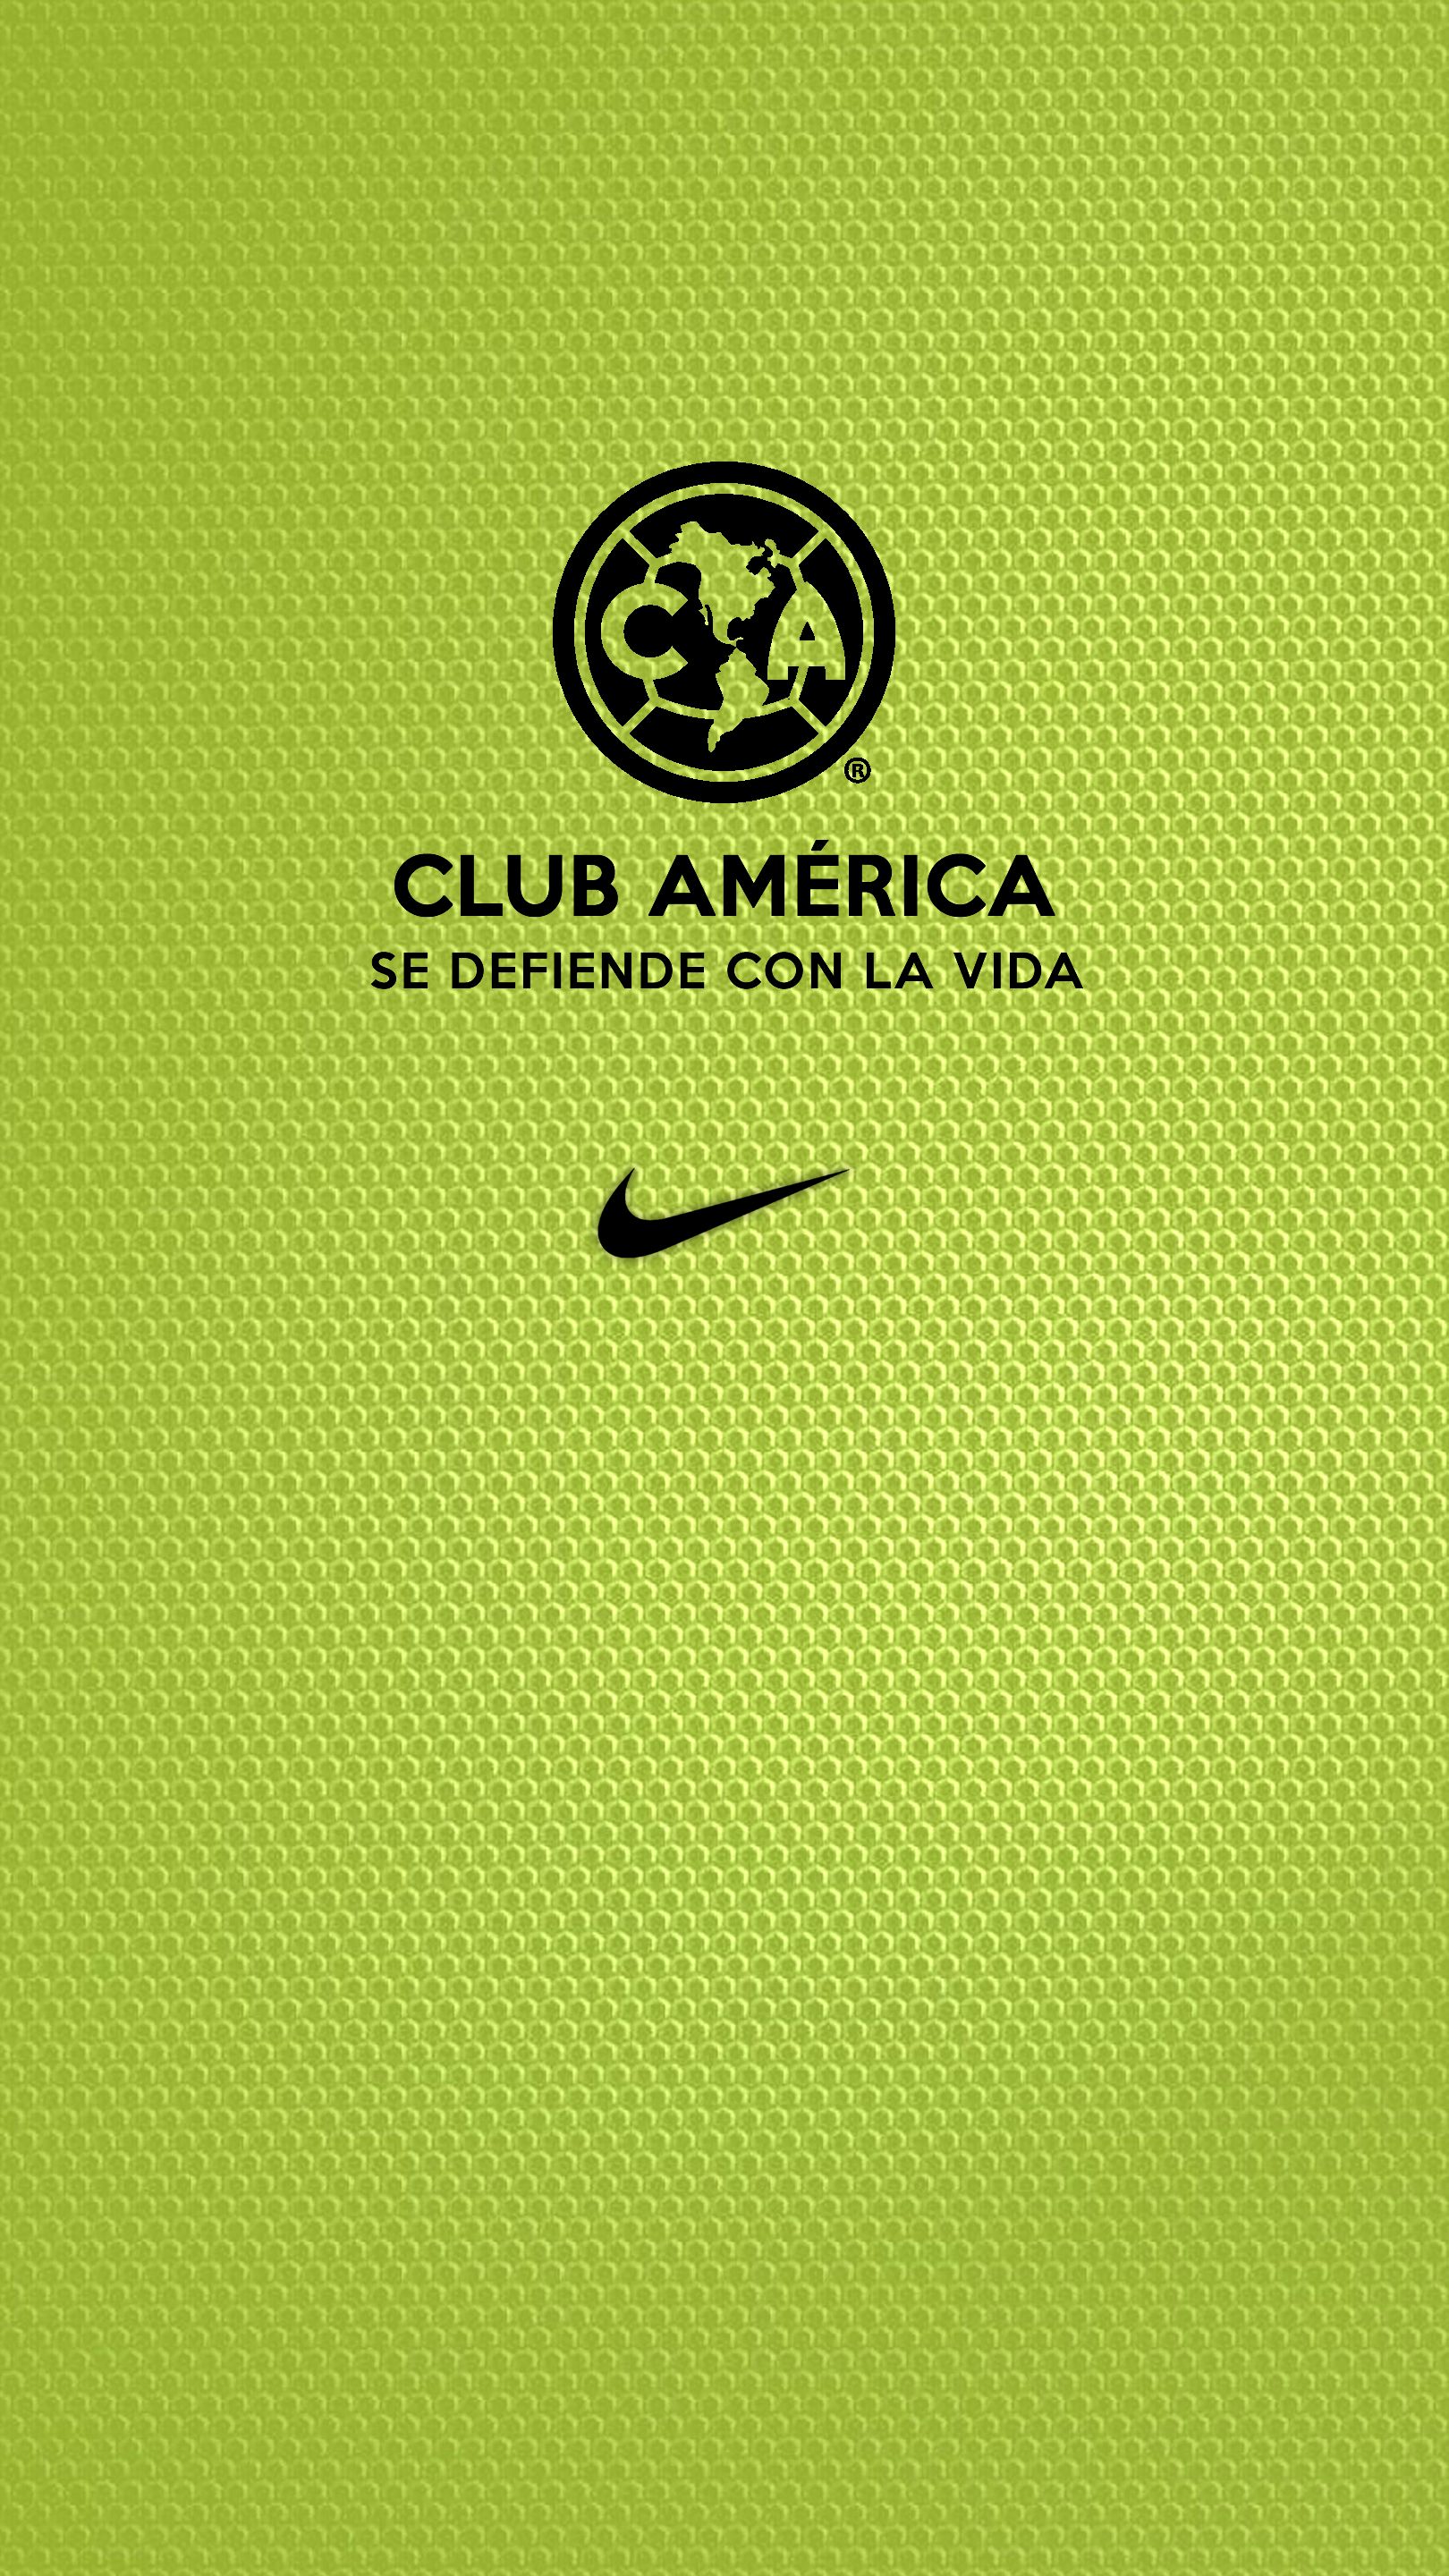 Club America Wallpapers - Fondos De Pantalla Club America - 1620x2880  Wallpaper - teahub.io